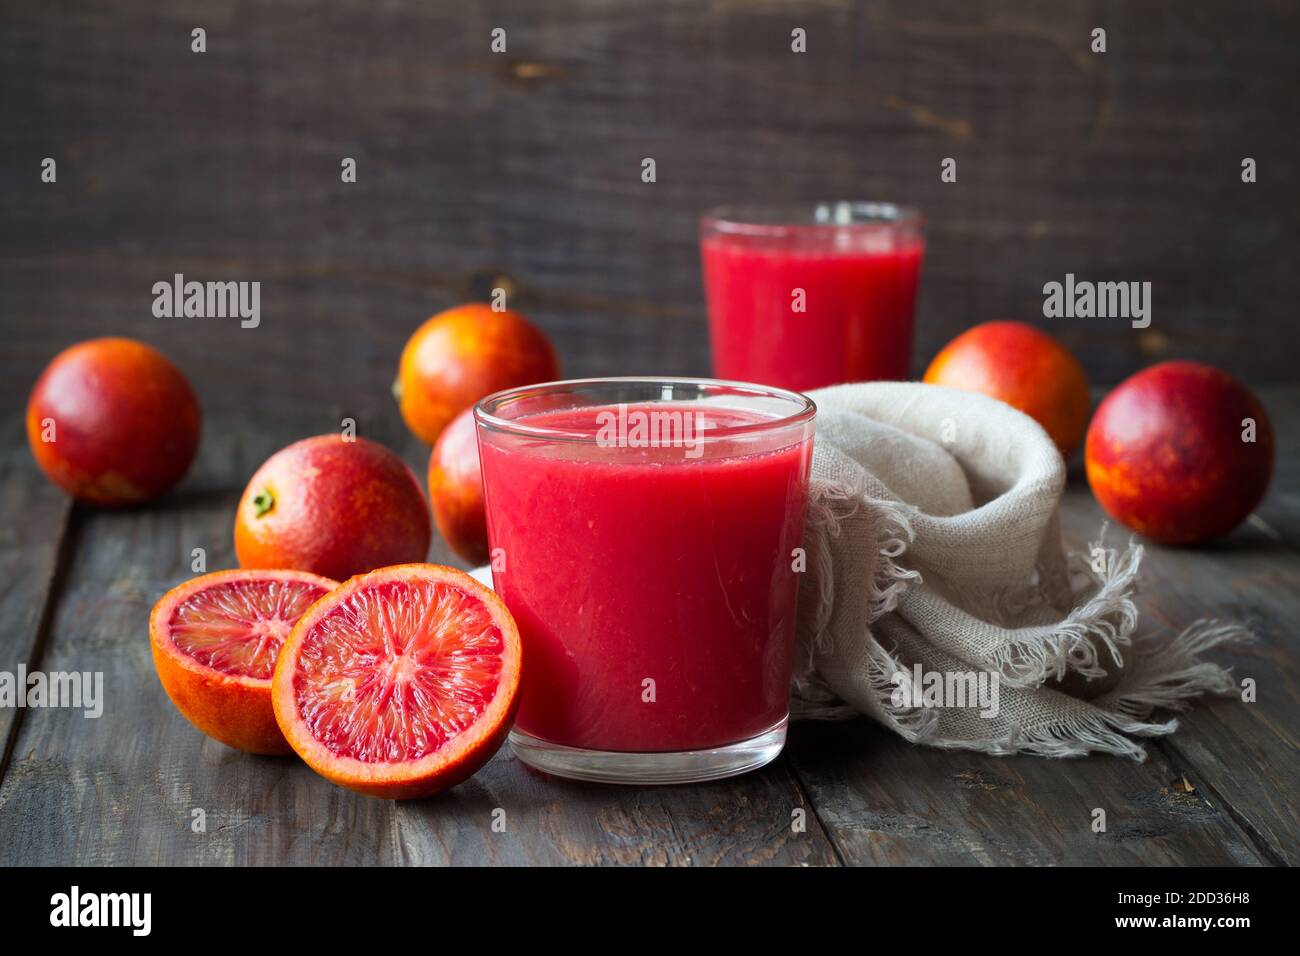 Spremuta fresca di arance di sangue in vetro con arance fresche intere su un tavolo di legno, fuoco selettivo Foto Stock